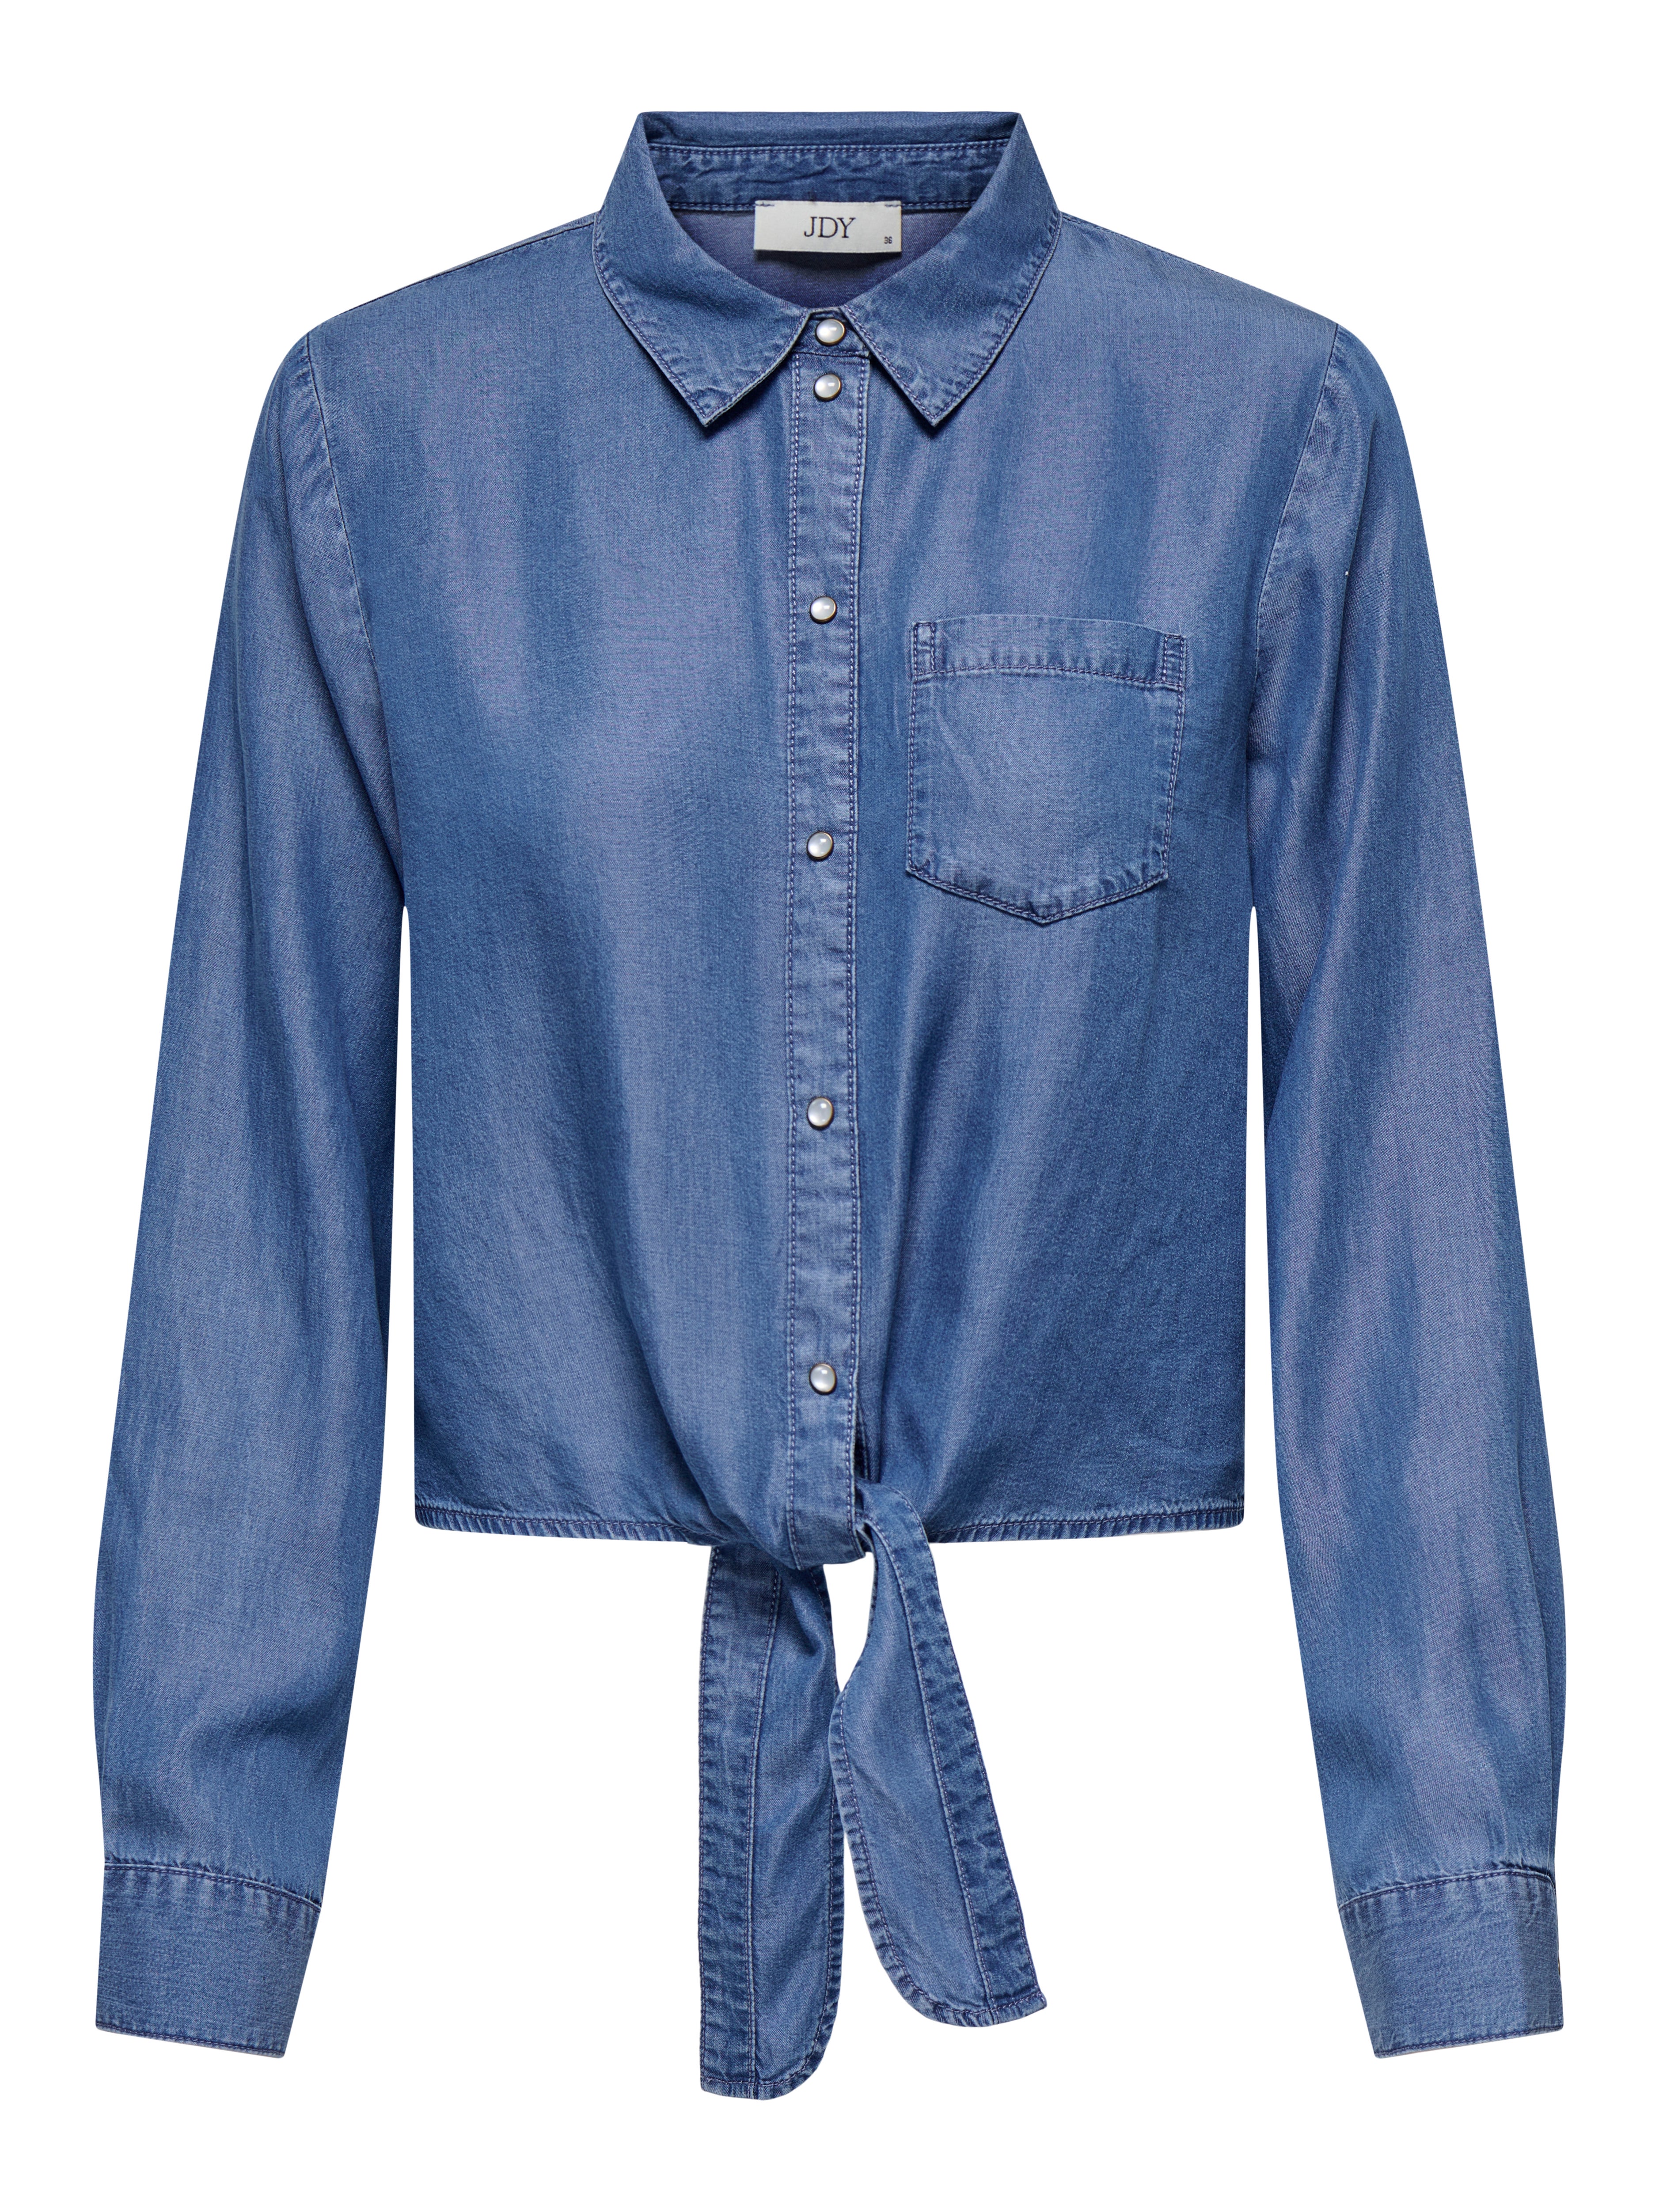 ASOS Denim Boyfriend Shirt With Tie Front in Midwash Blue | ASOS